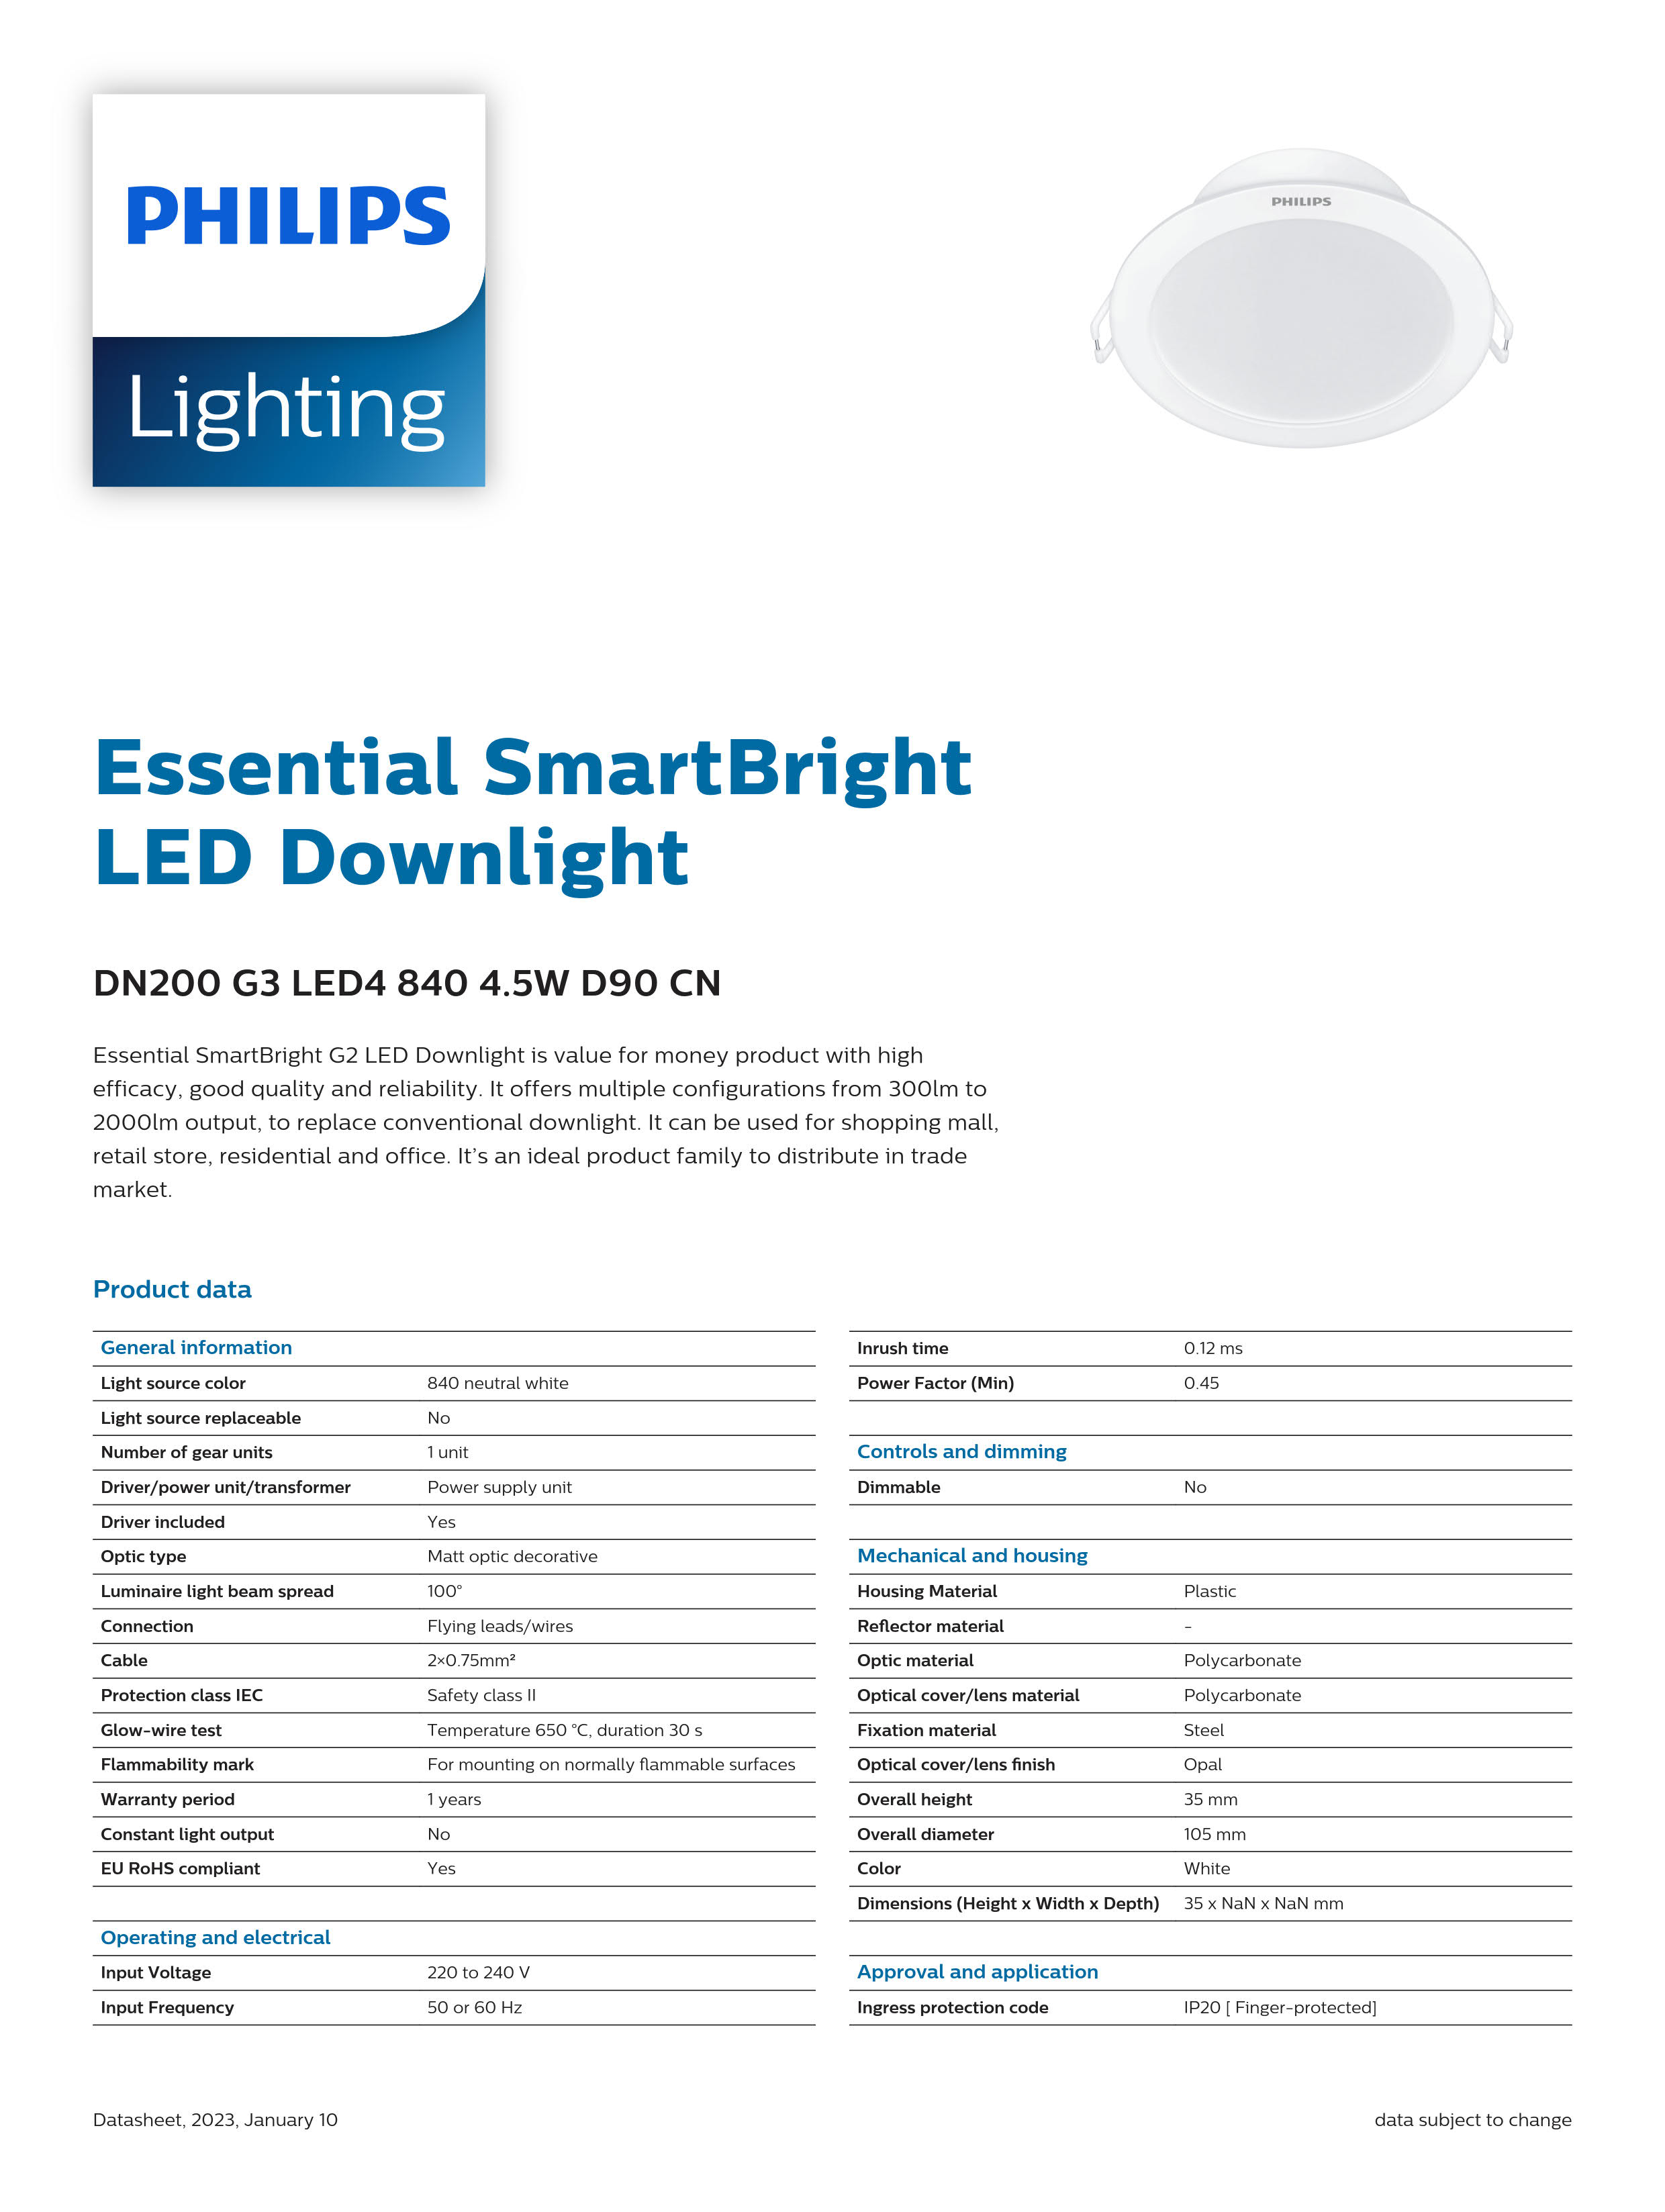 PHILIPS LED Downlight DN200 G3 LED4 840 4.5W D90 CN 929003269910